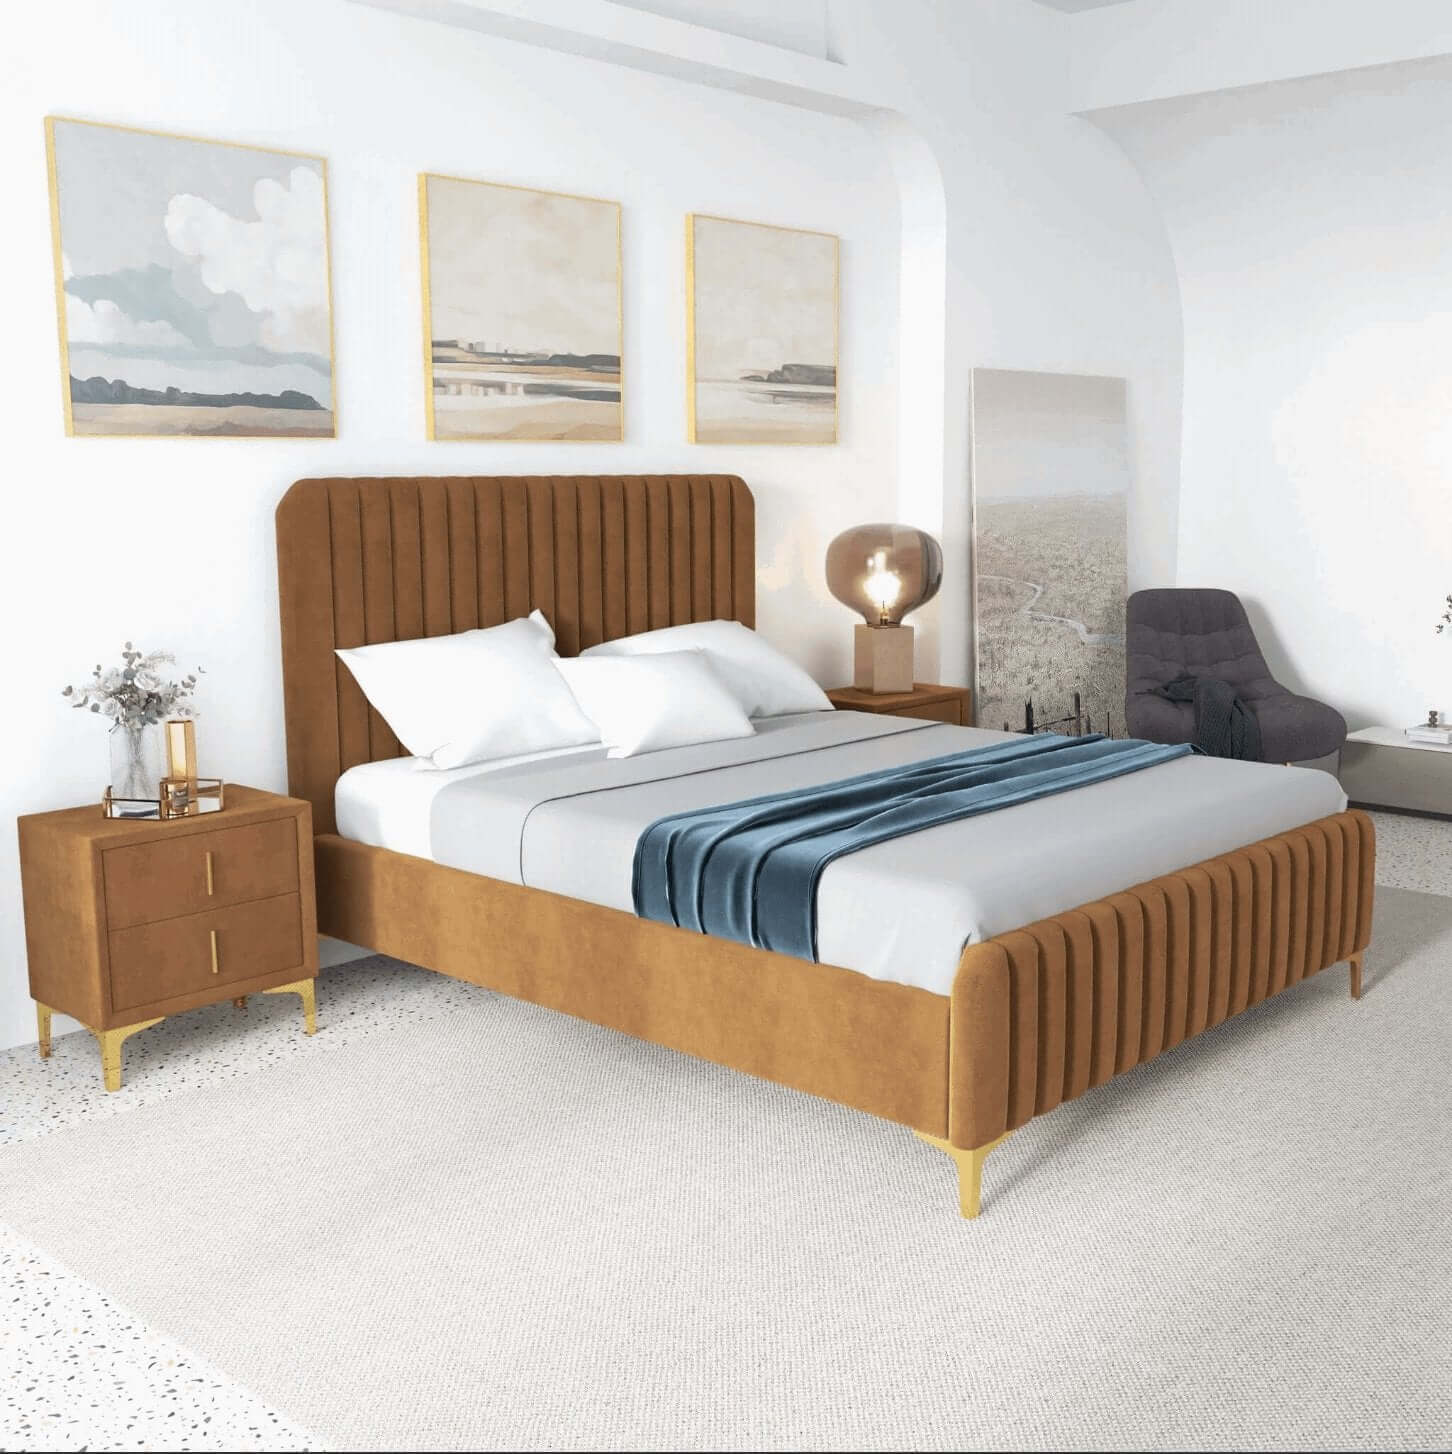 Bethany Velvet Upholstered Channel Tufted Platform Bed - Revel Sofa 